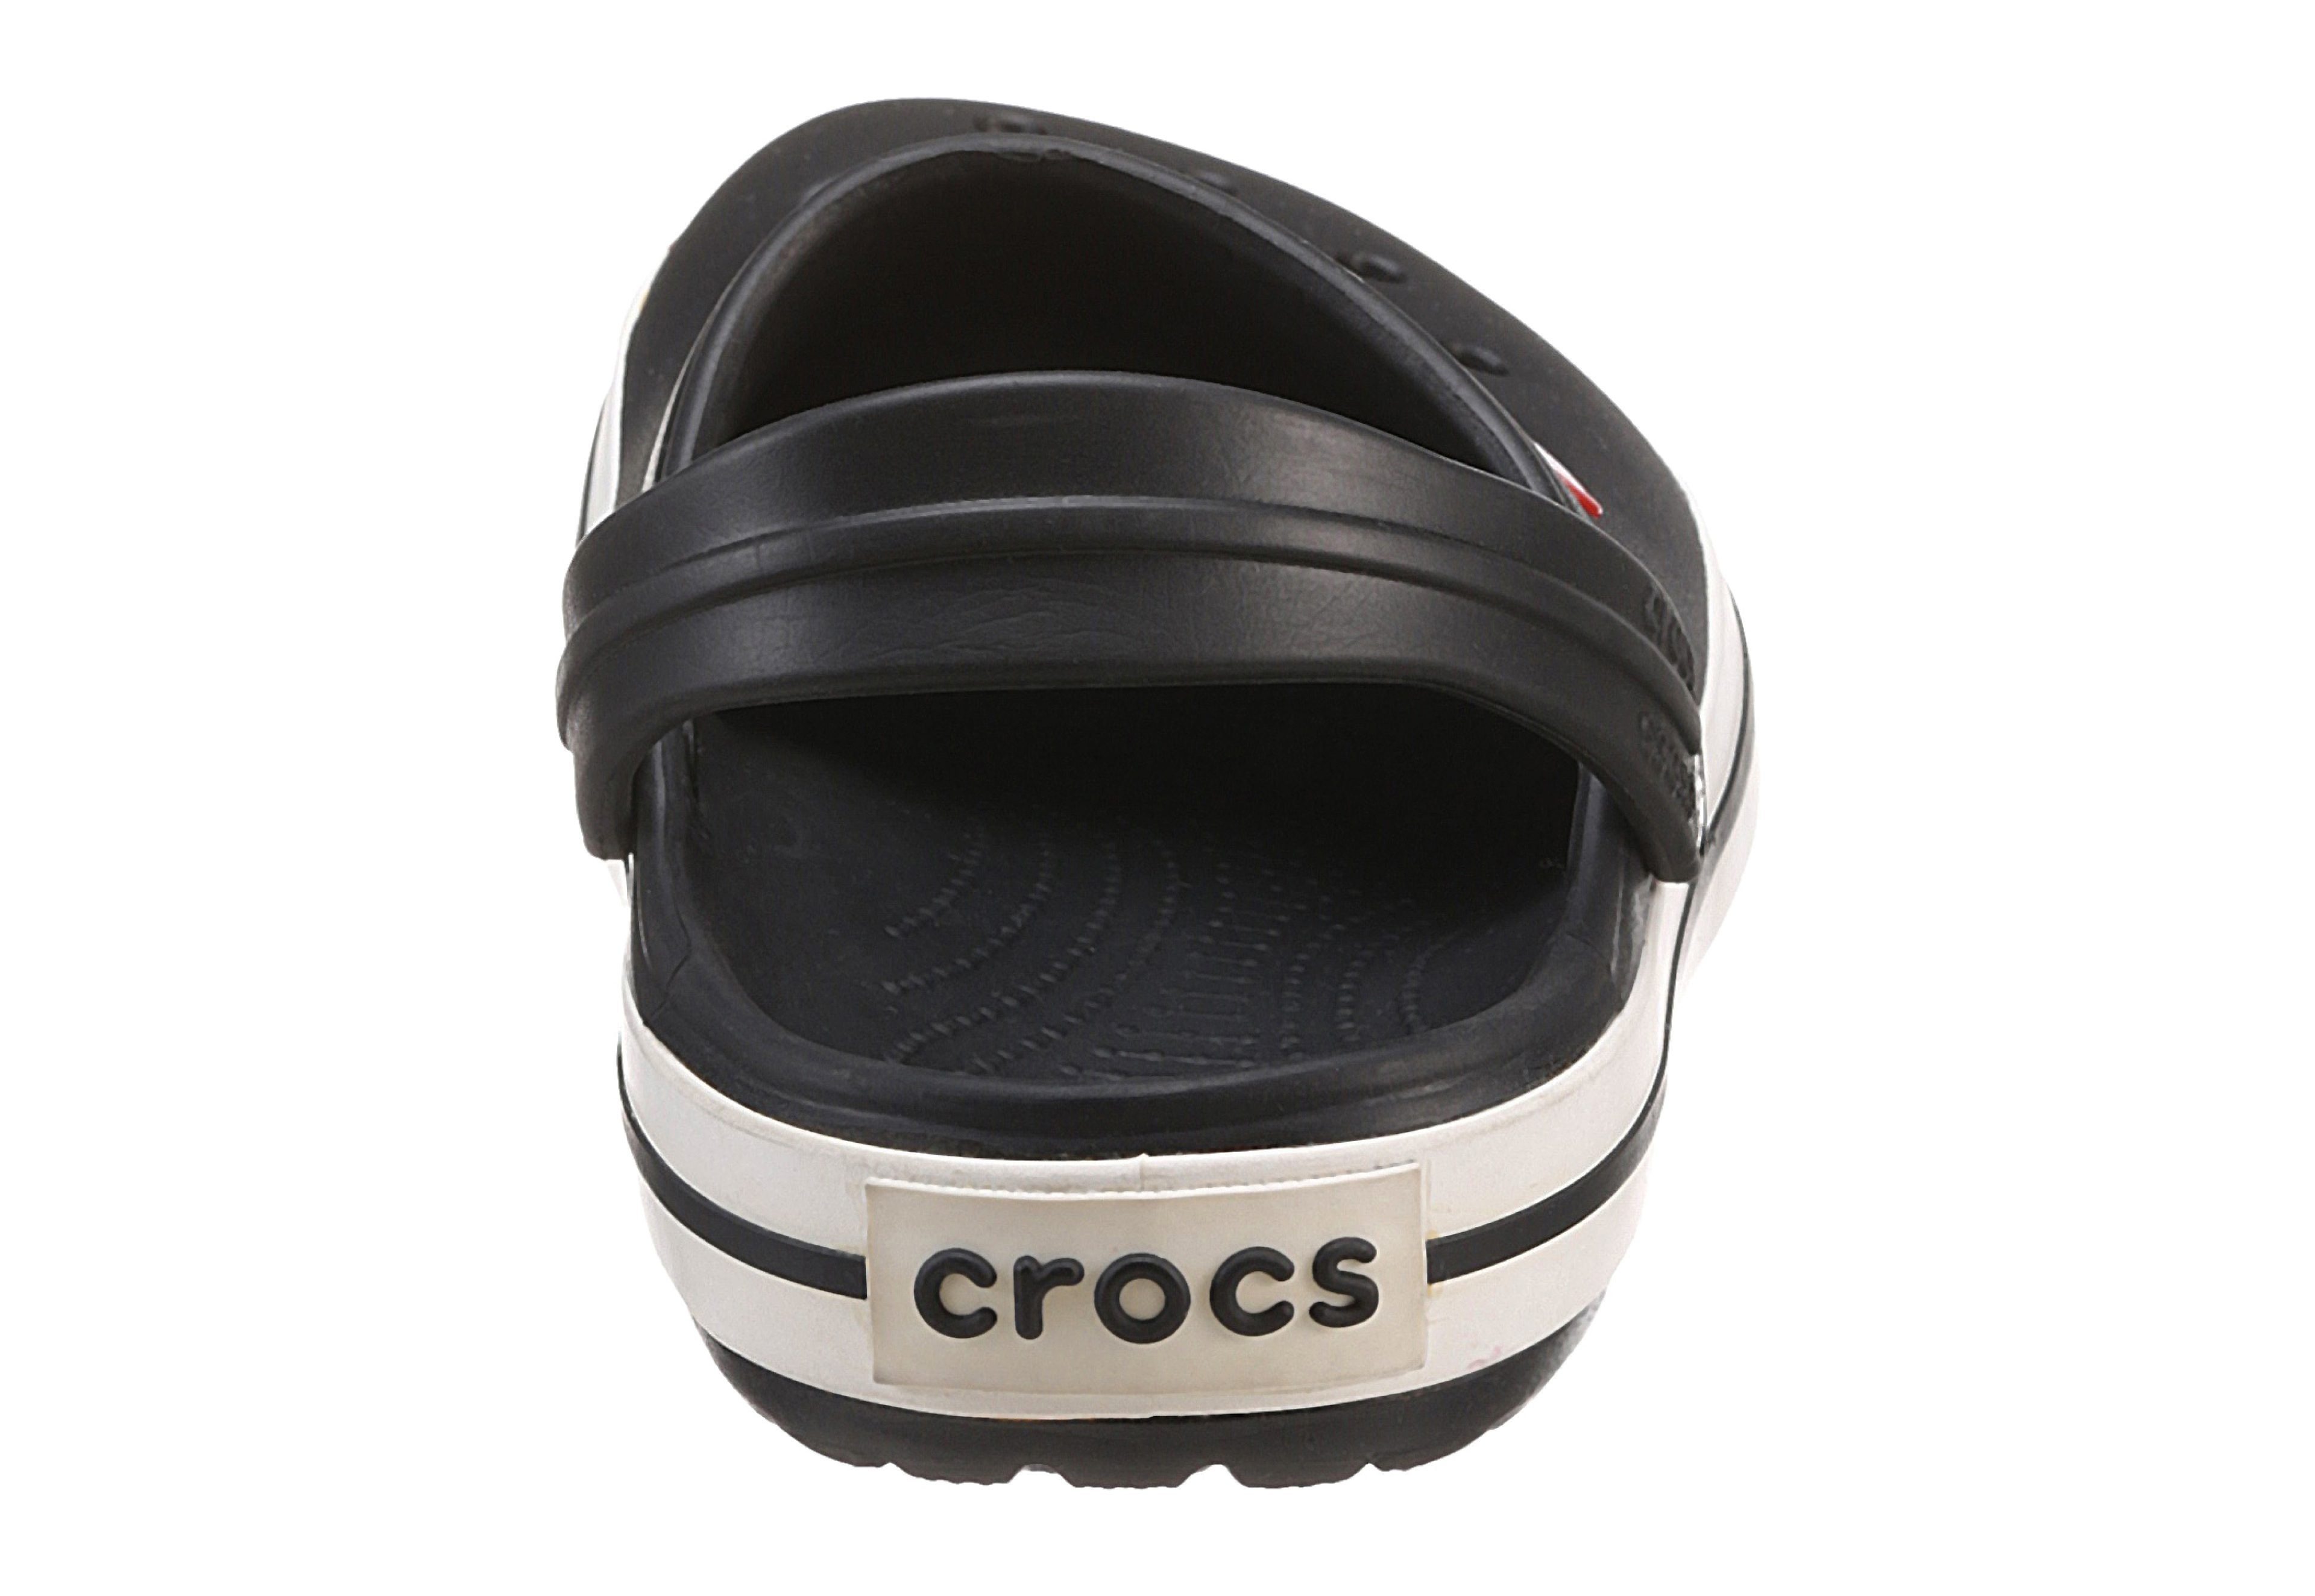 farbiger Clog mit Crocband Laufsohle Crocs schwarz-weiß